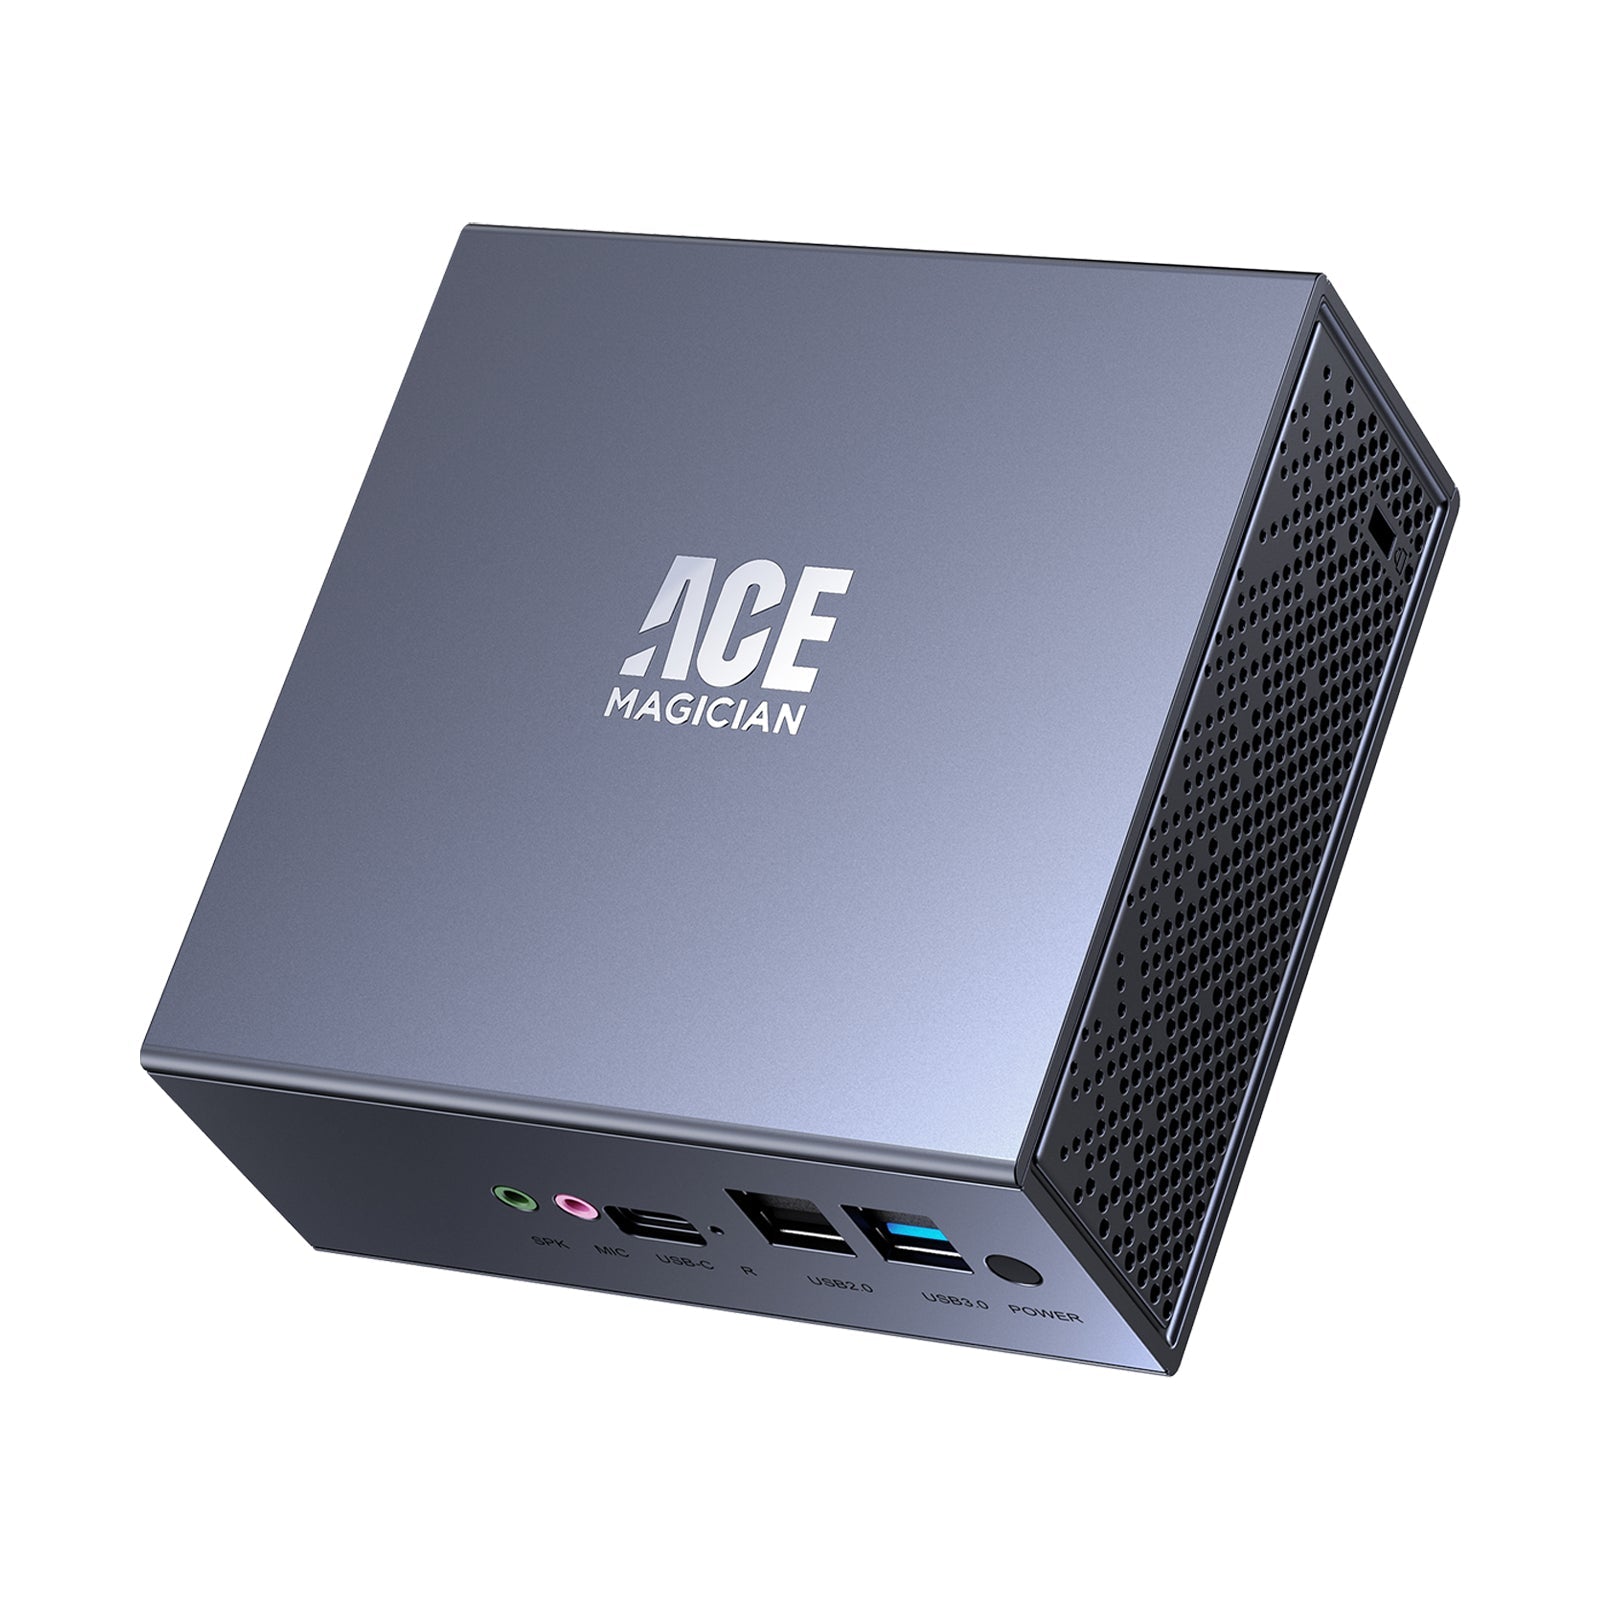 Ace Magician AM08 Pro Mini PC review (Page 6)